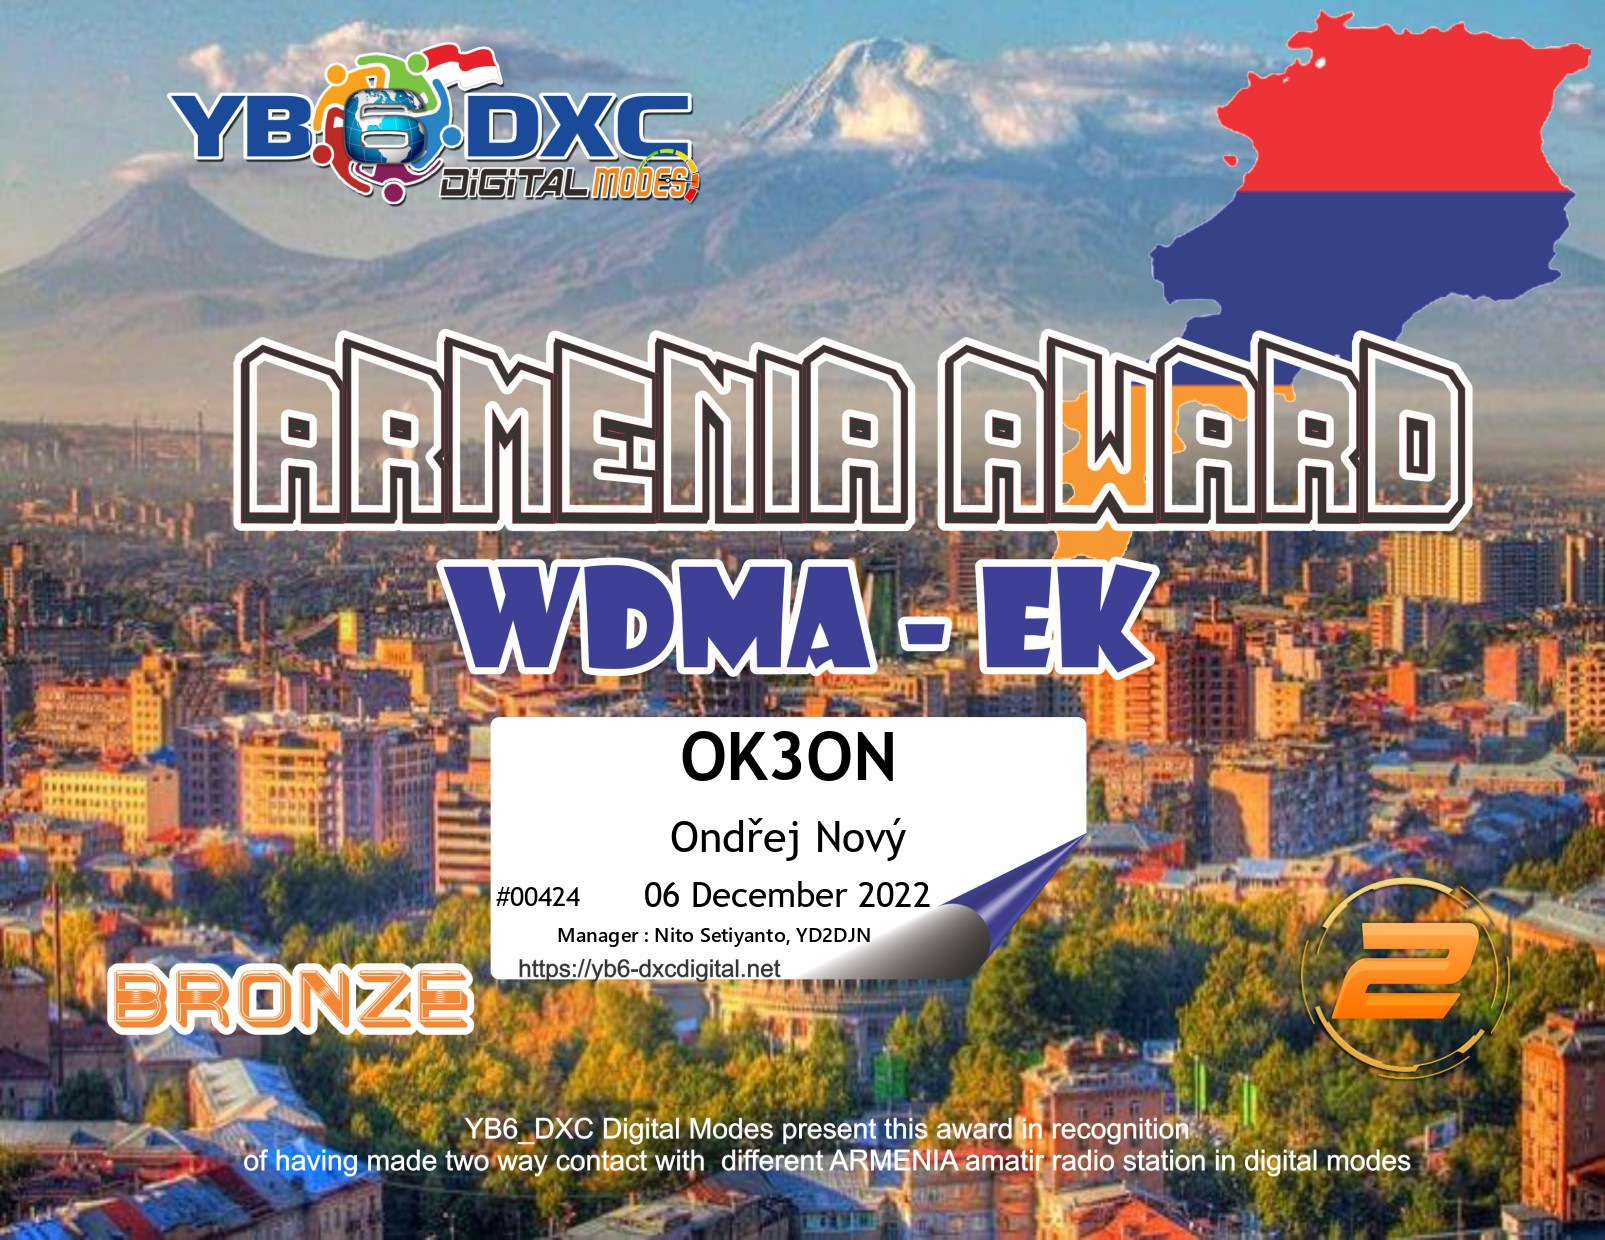 awards/OK3ON-WDMEK-BRONZE_YB6DXC.jpg